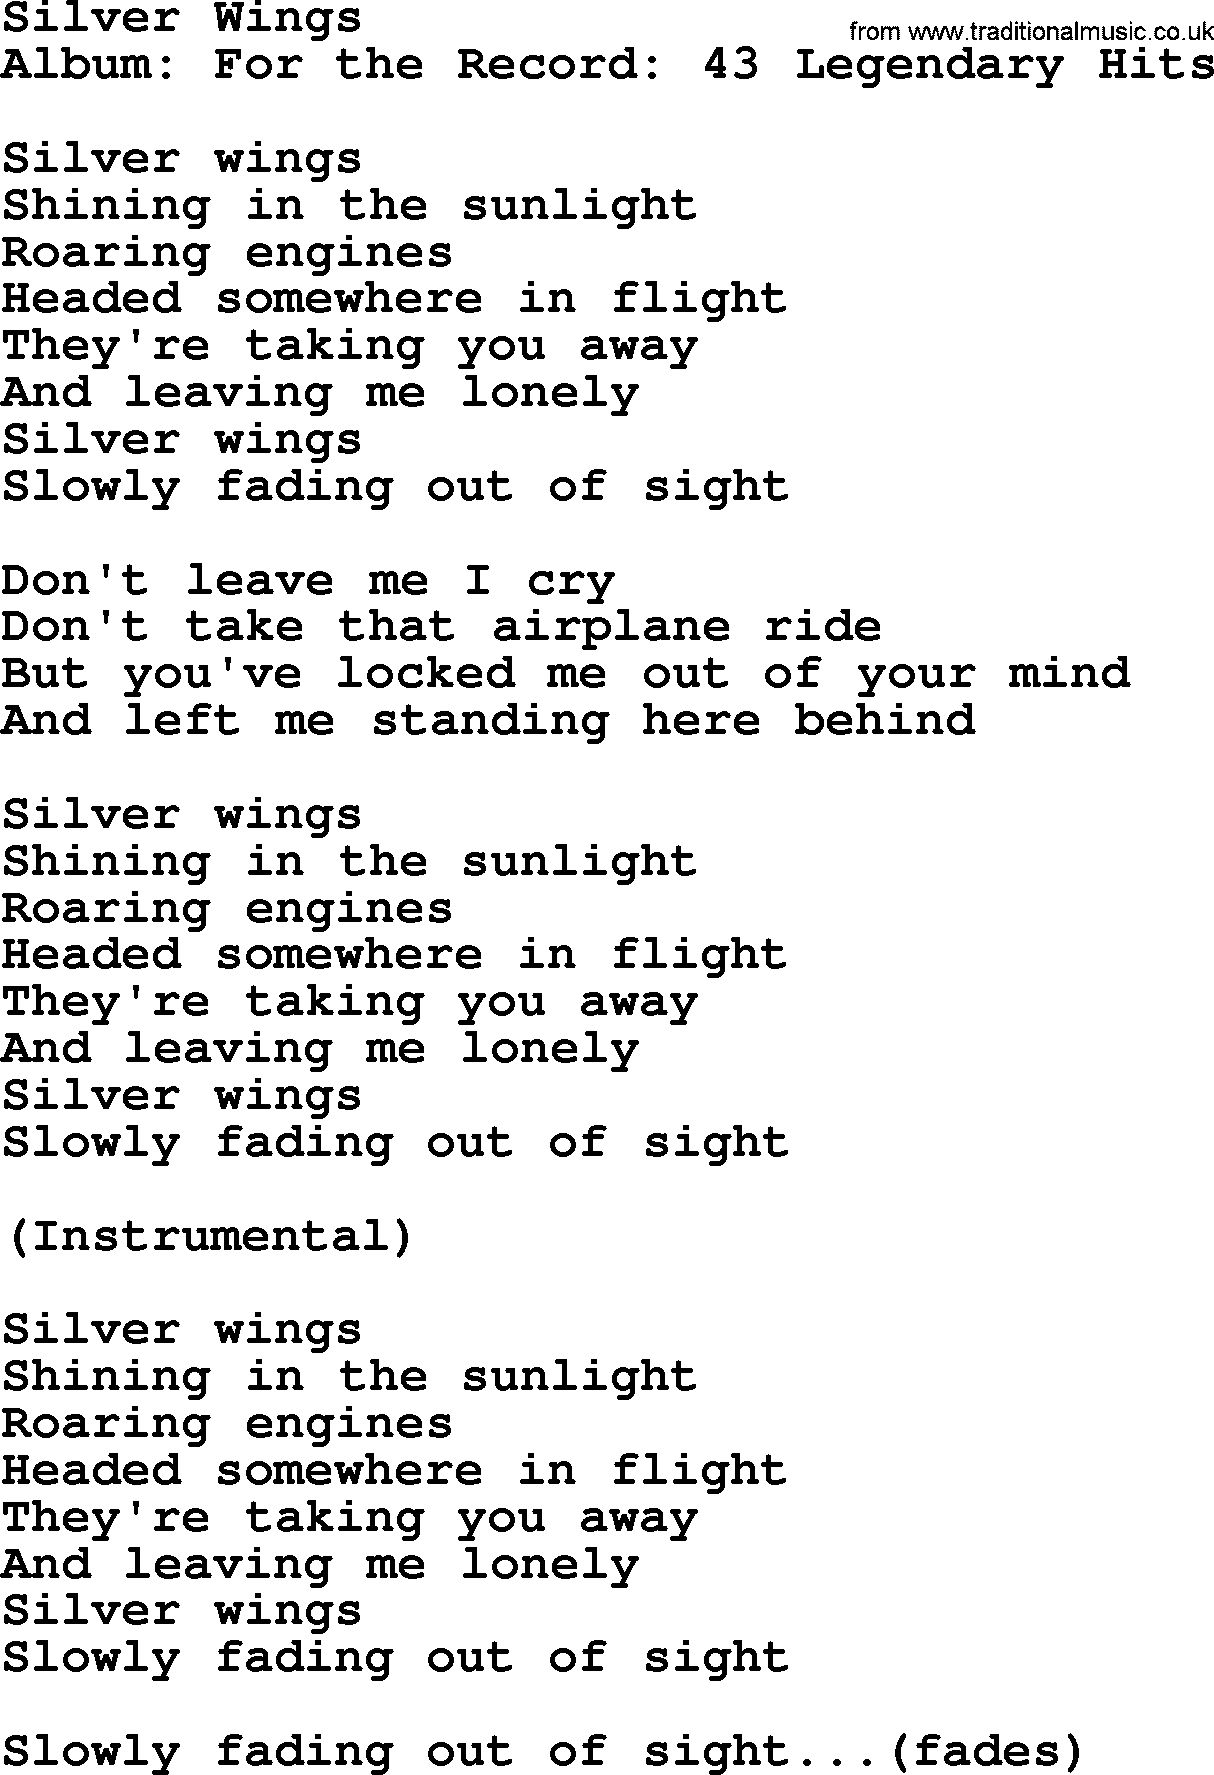 Merle Haggard song: Silver Wings, lyrics.